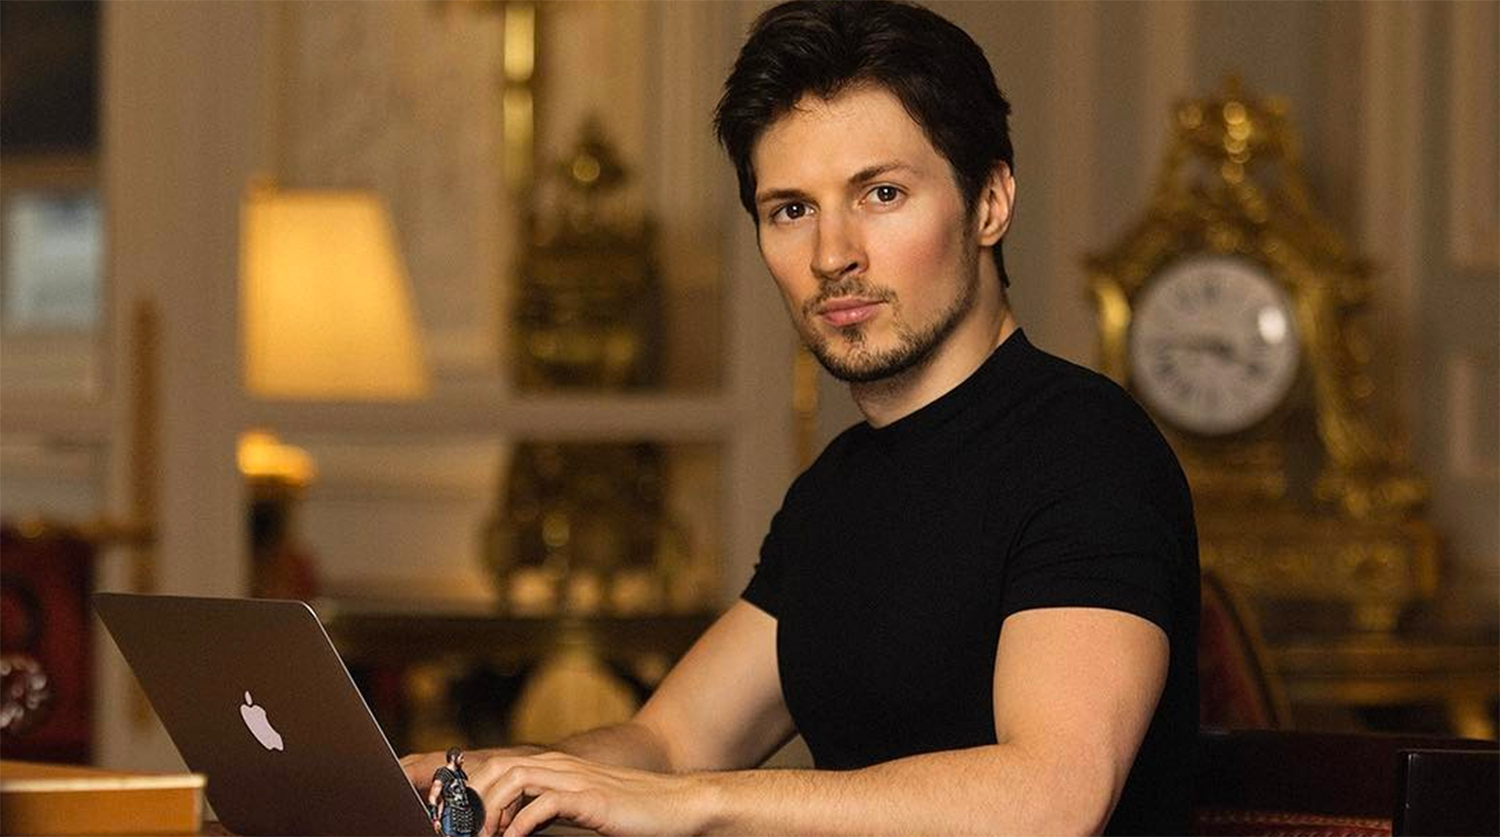 Павел Дуров рассказал, куда уйдут деньги, вырученные с Telegram Premium